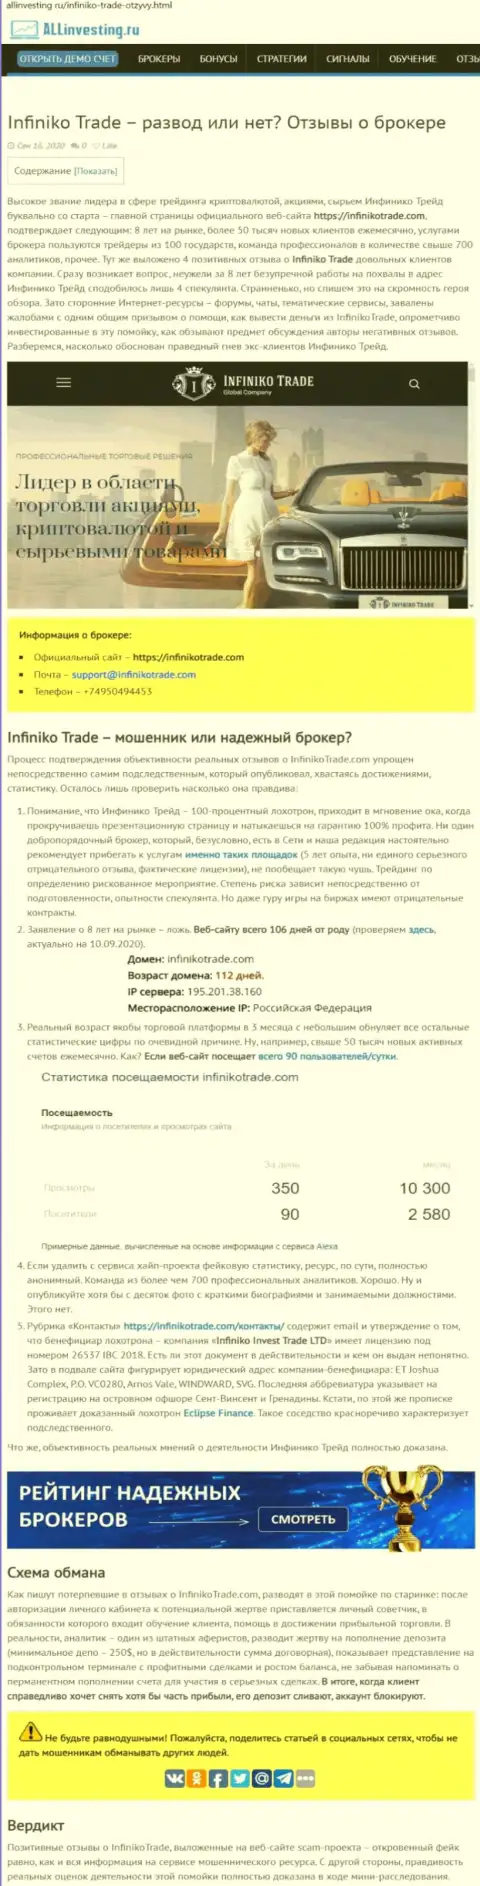 Infiniko Invest Trade LTD однозначные интернет аферисты, будьте бдительны доверившись им (обзор)